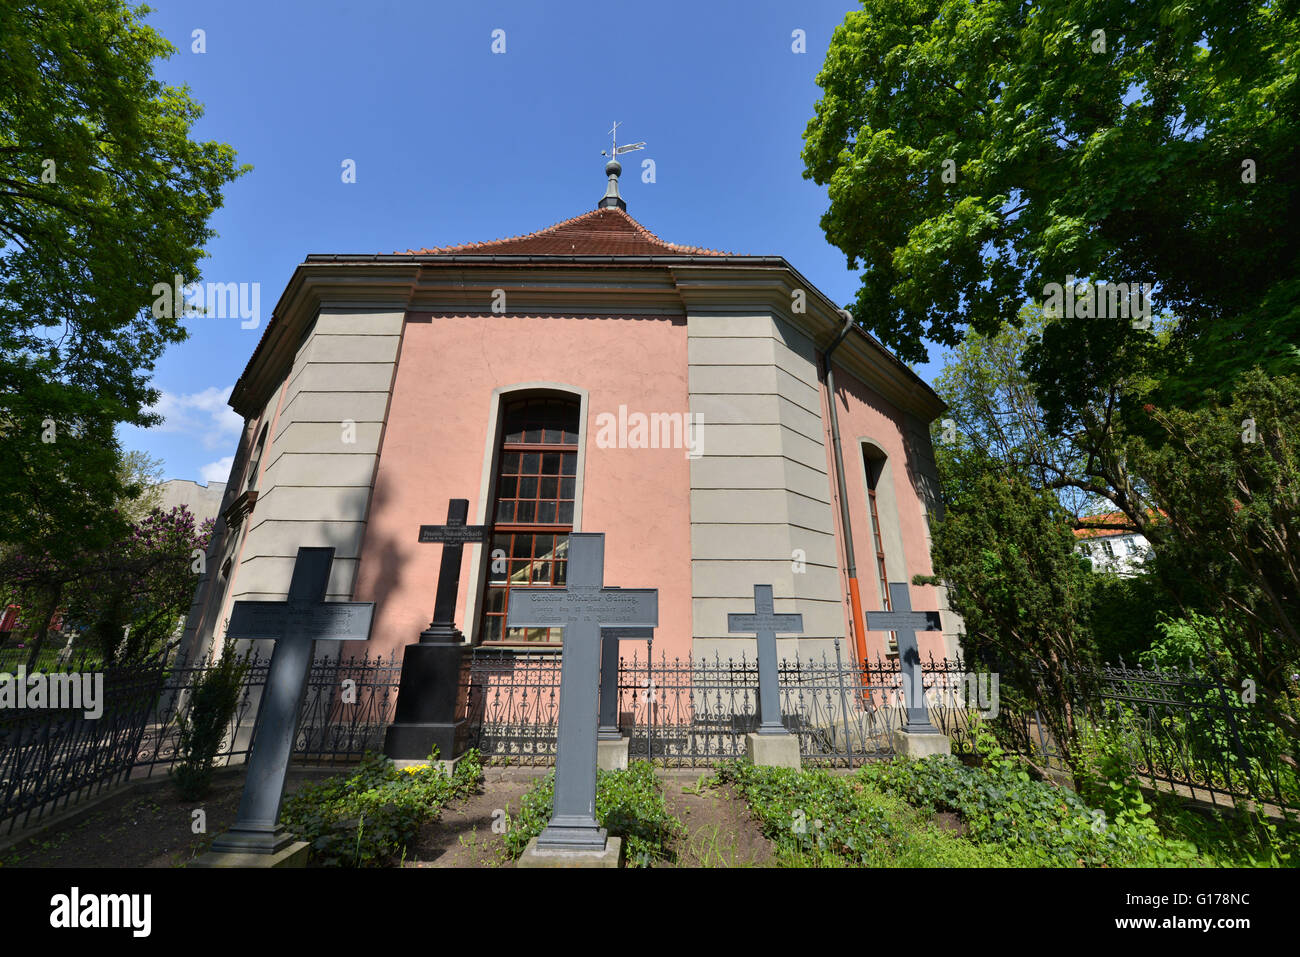 Alte Dorfkirche, Clayallee, Zehlendorf, Berlin, Deutschland Stock Photo